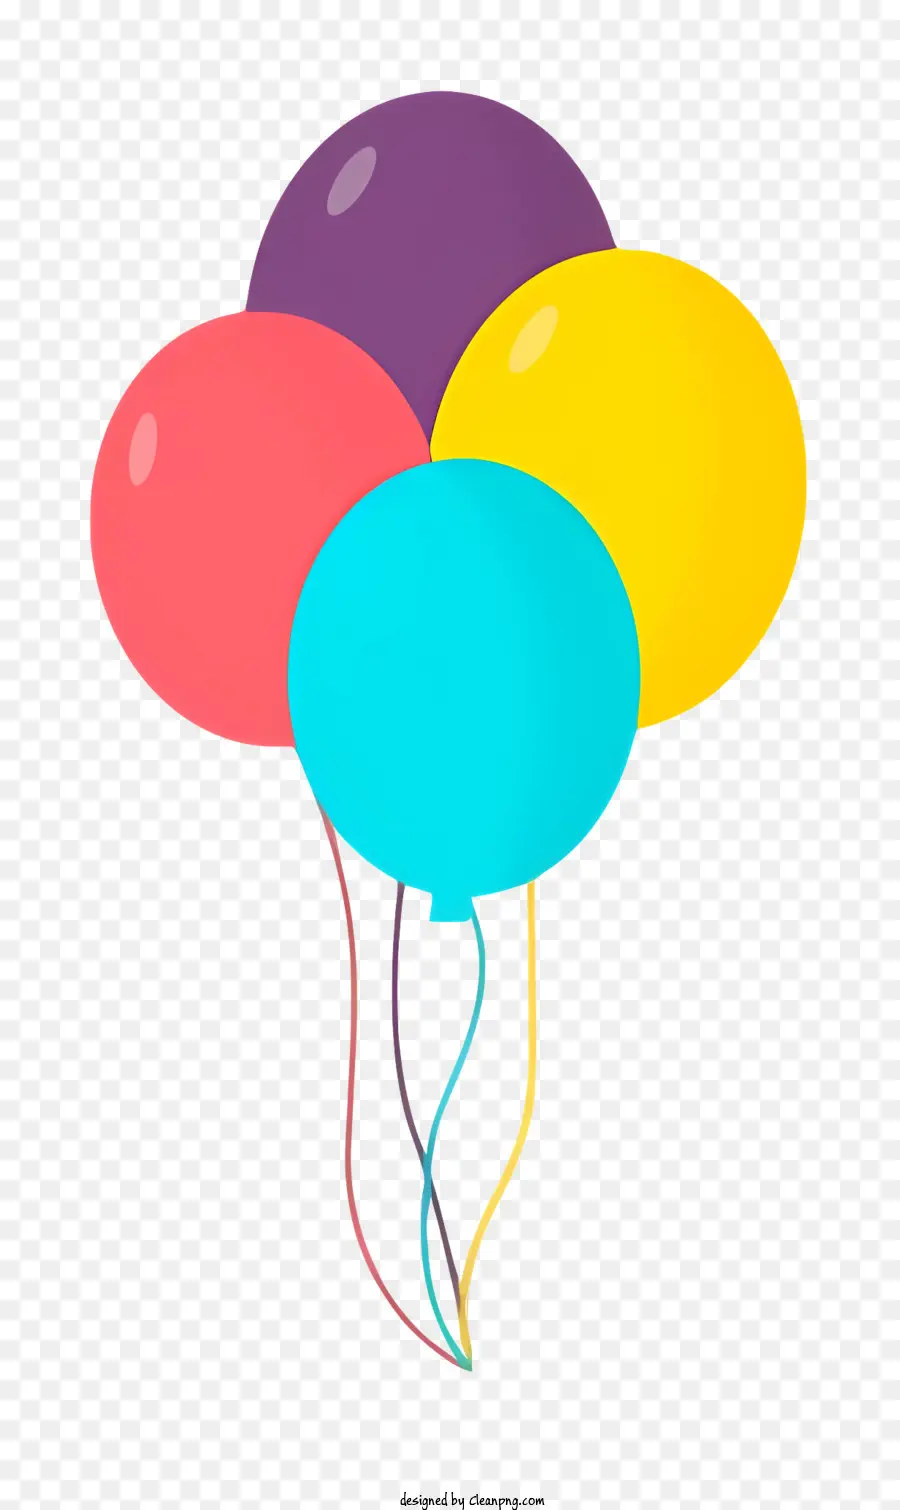 palloncini colorati aria flottanti - Palloncini colorati che fluttuano in un motivo coordinato, una scena gioiosa